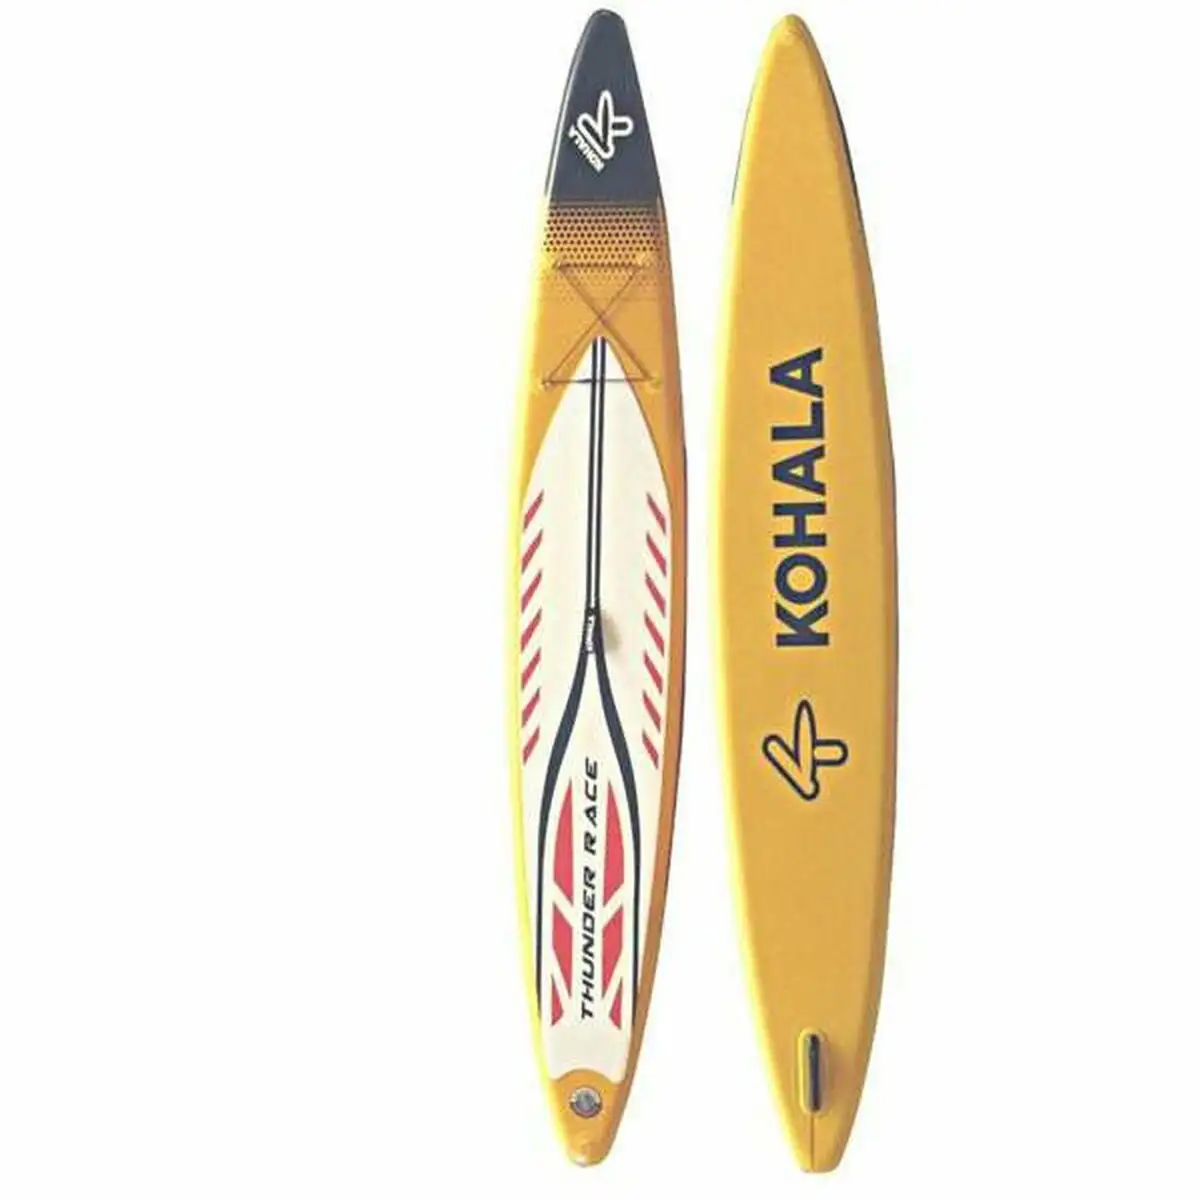 Planche de paddle surf kohala thunder jaune 15 psi 425 x 66 x 15 cm _6071. DIAYTAR SENEGAL - L'Art du Shopping Éclairé. Naviguez à travers notre plateforme intuitive et découvrez une variété d'articles soigneusement sélectionnés pour répondre à vos besoins et à vos envies.